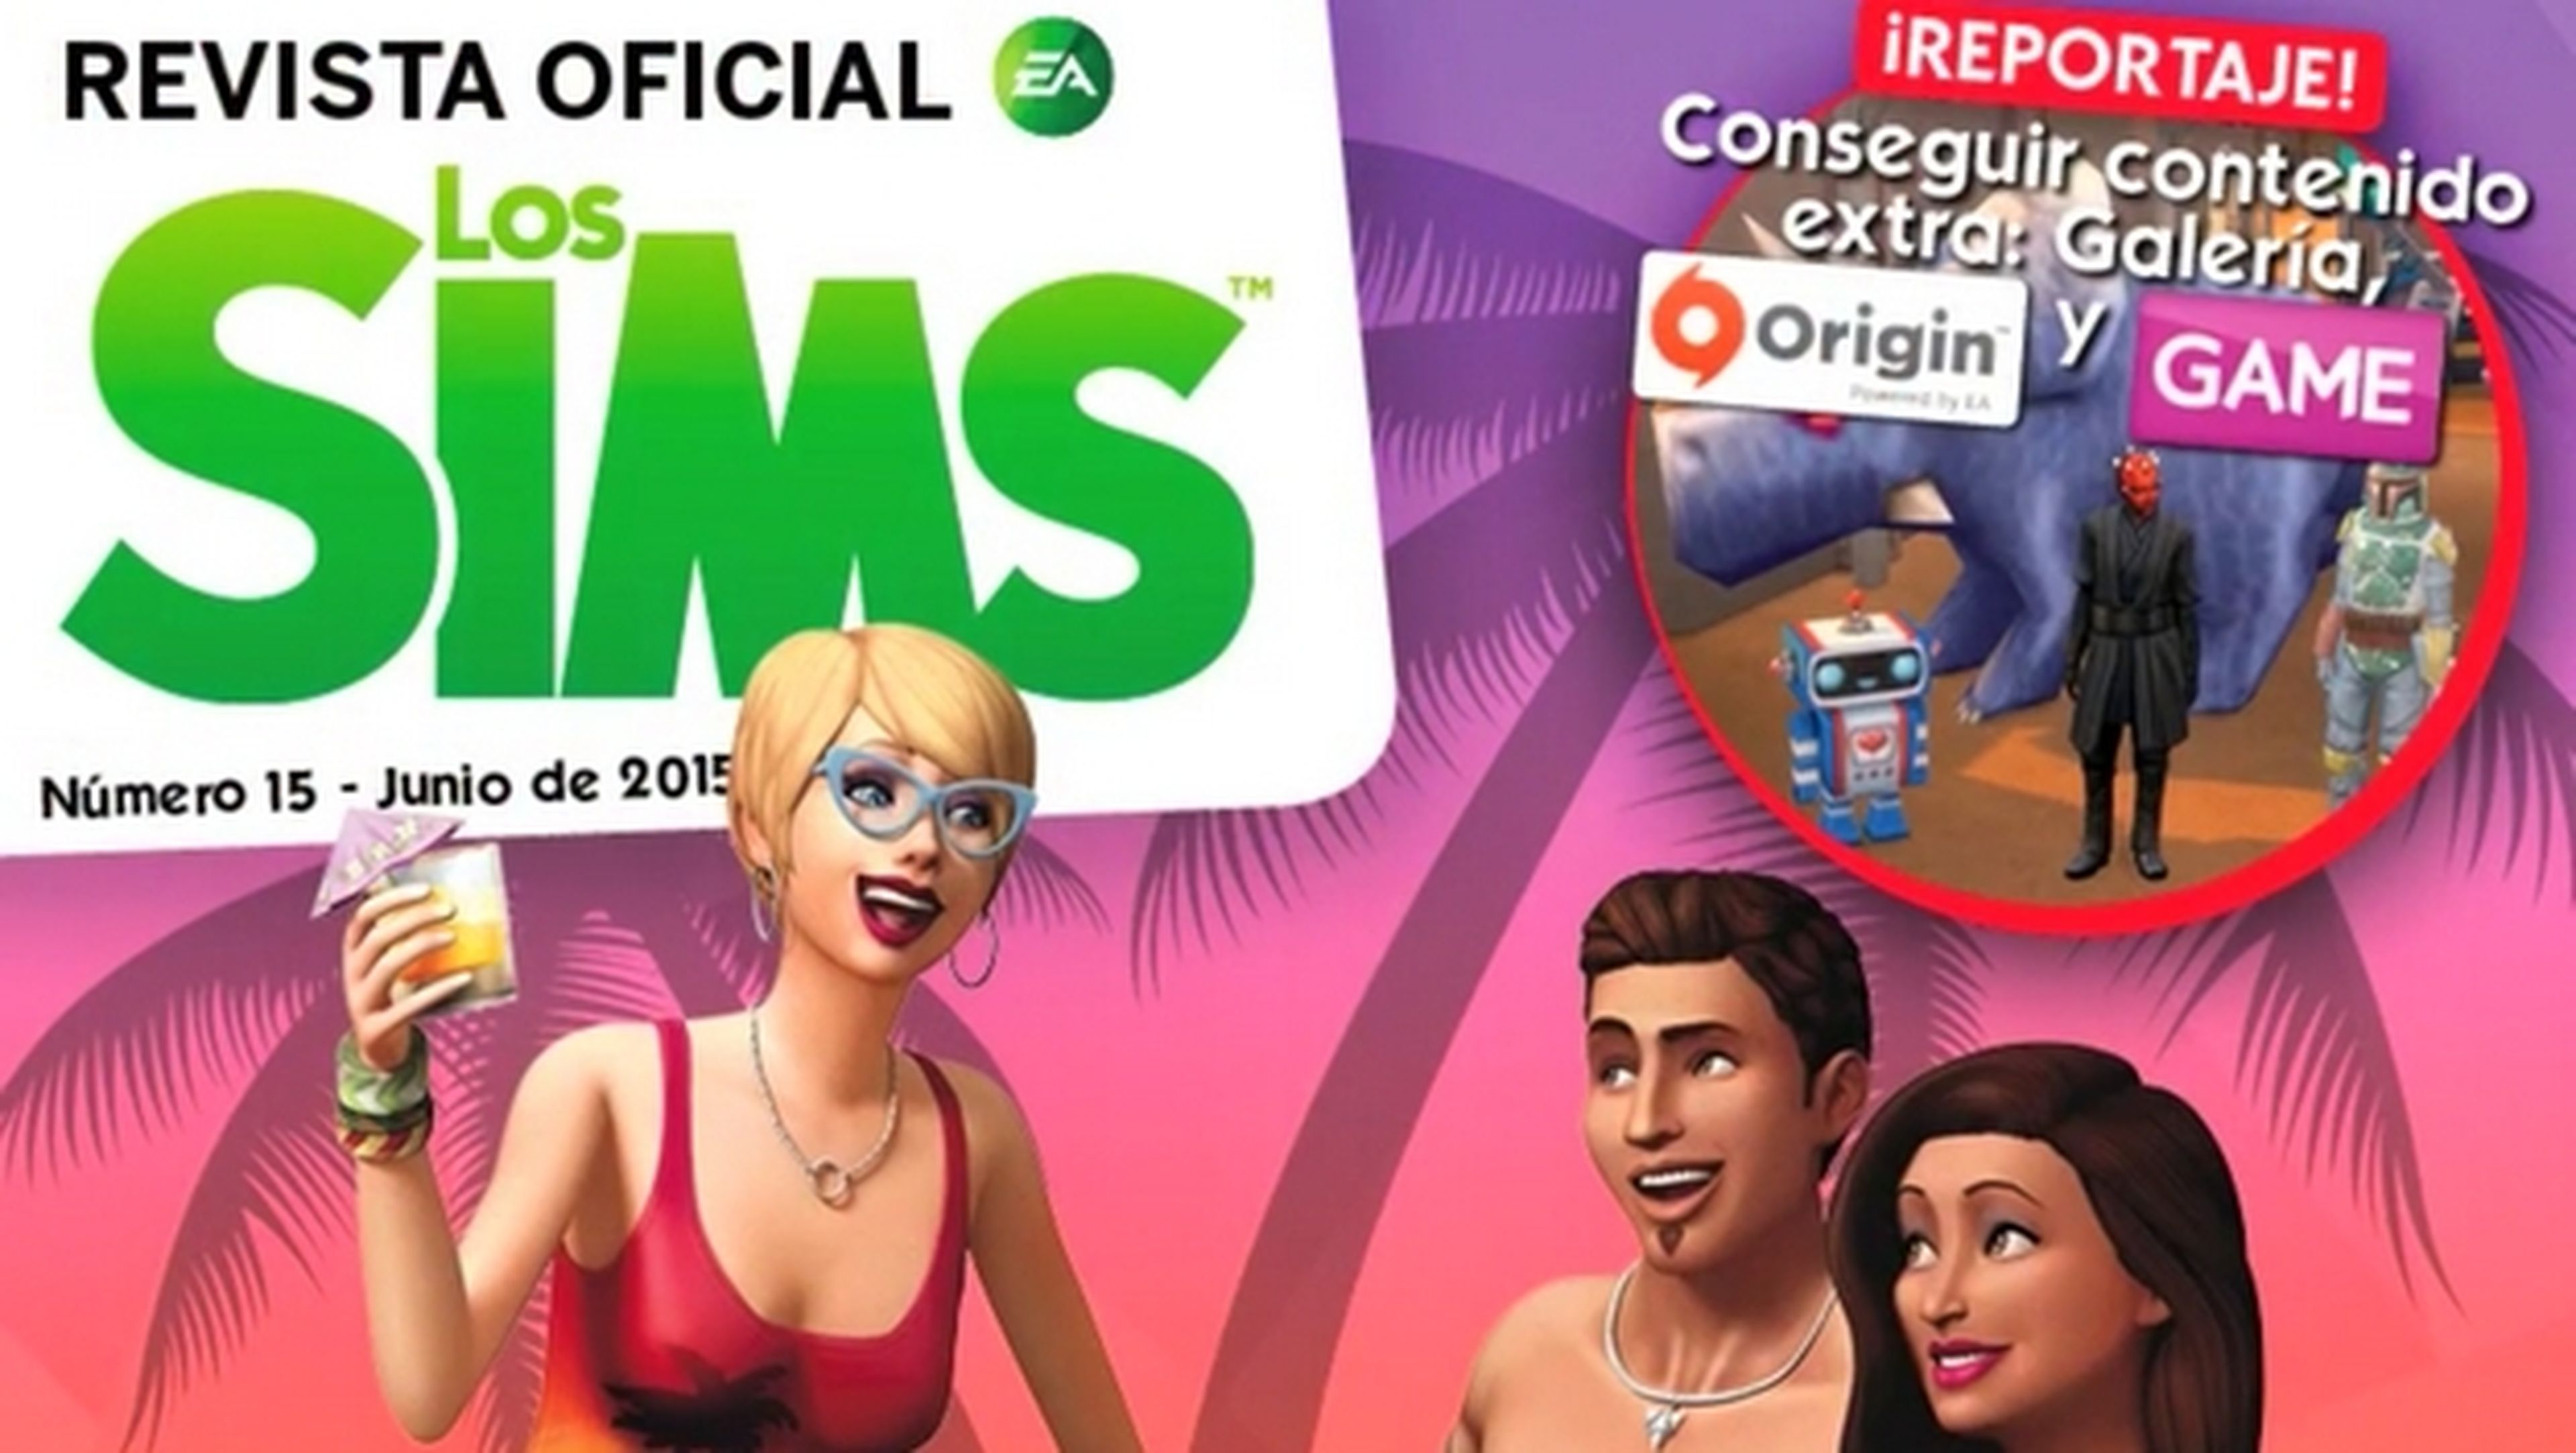 Revista Oficial de los Sims Número 15, descárgala gratis